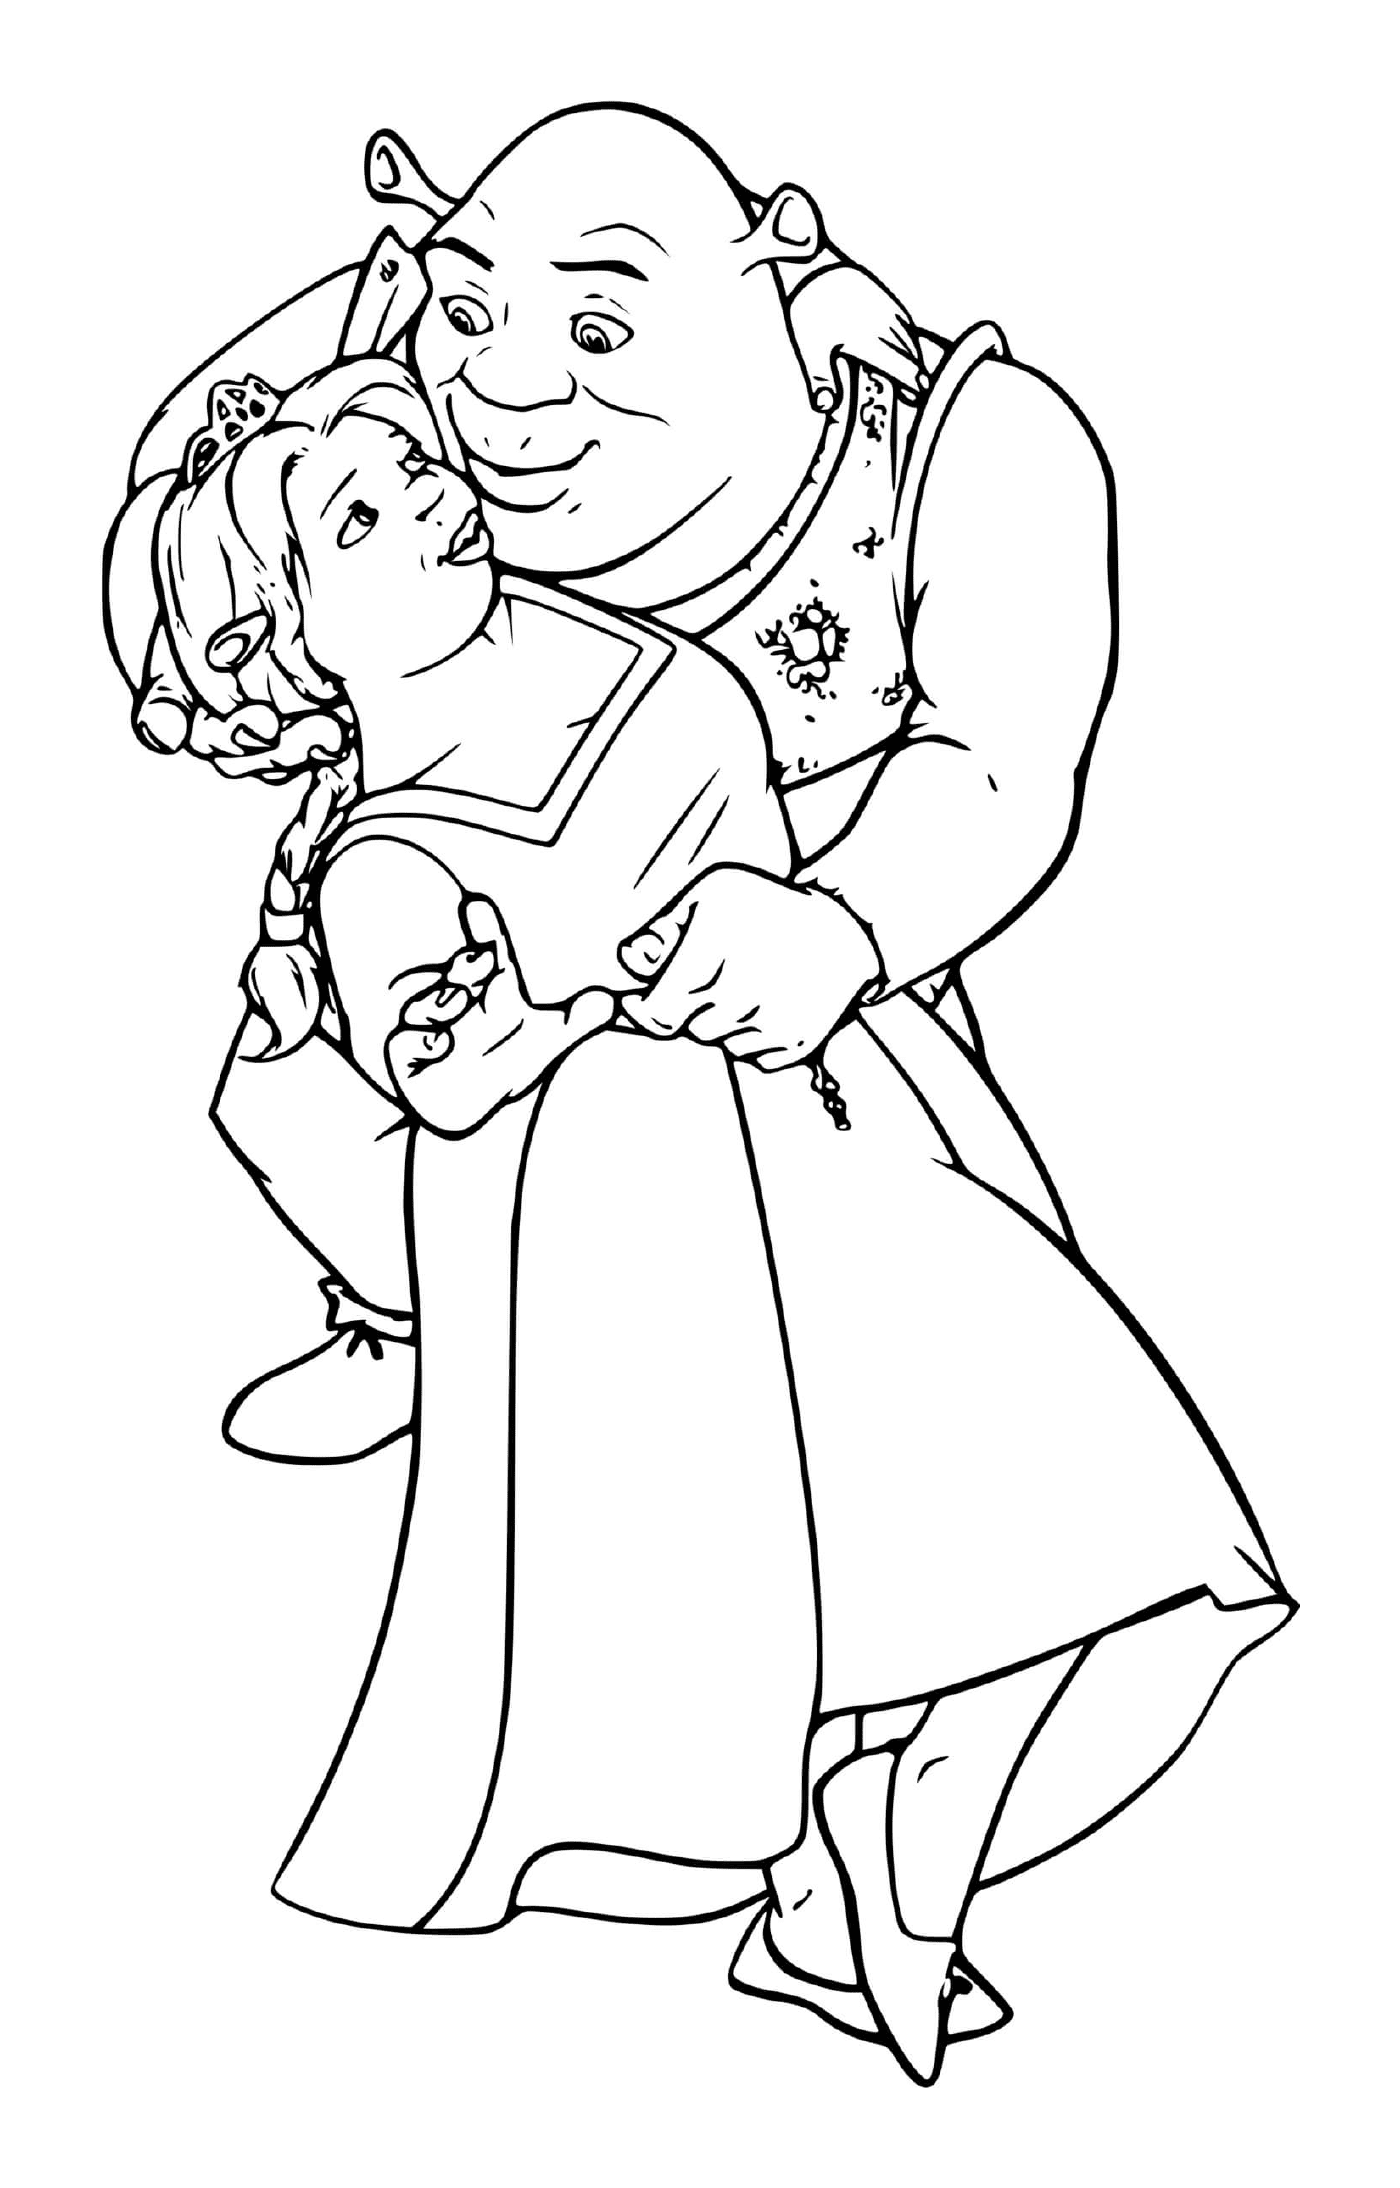  Старик держит маленькую девочку на руках 